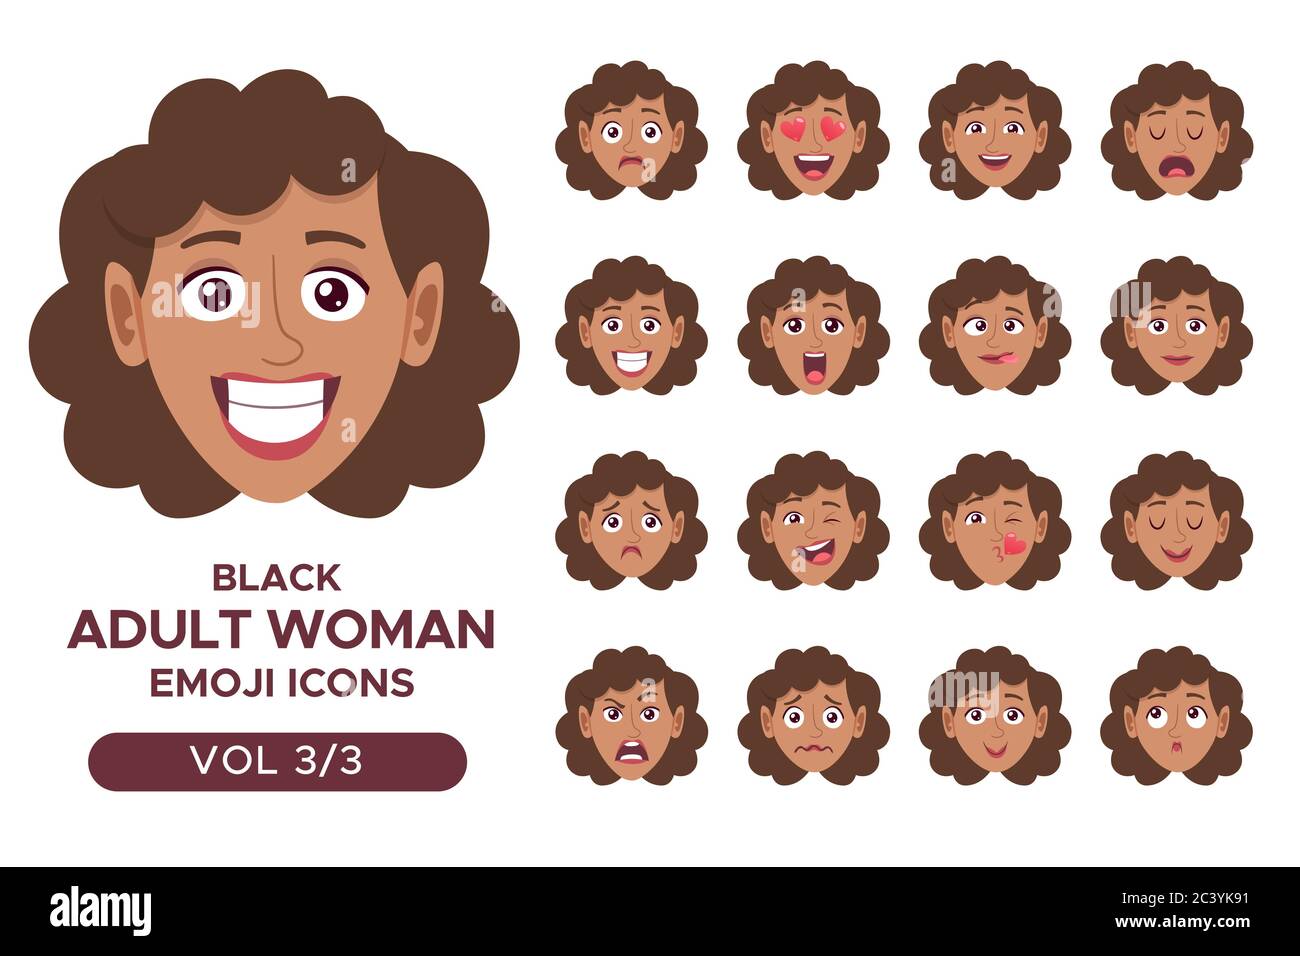 Ensemble d'avatar pour femme. Femme adulte noire personnage emoji avec différentes expressions. Illustration vectorielle en style dessin animé. Jeu 3 sur 3. Illustration de Vecteur